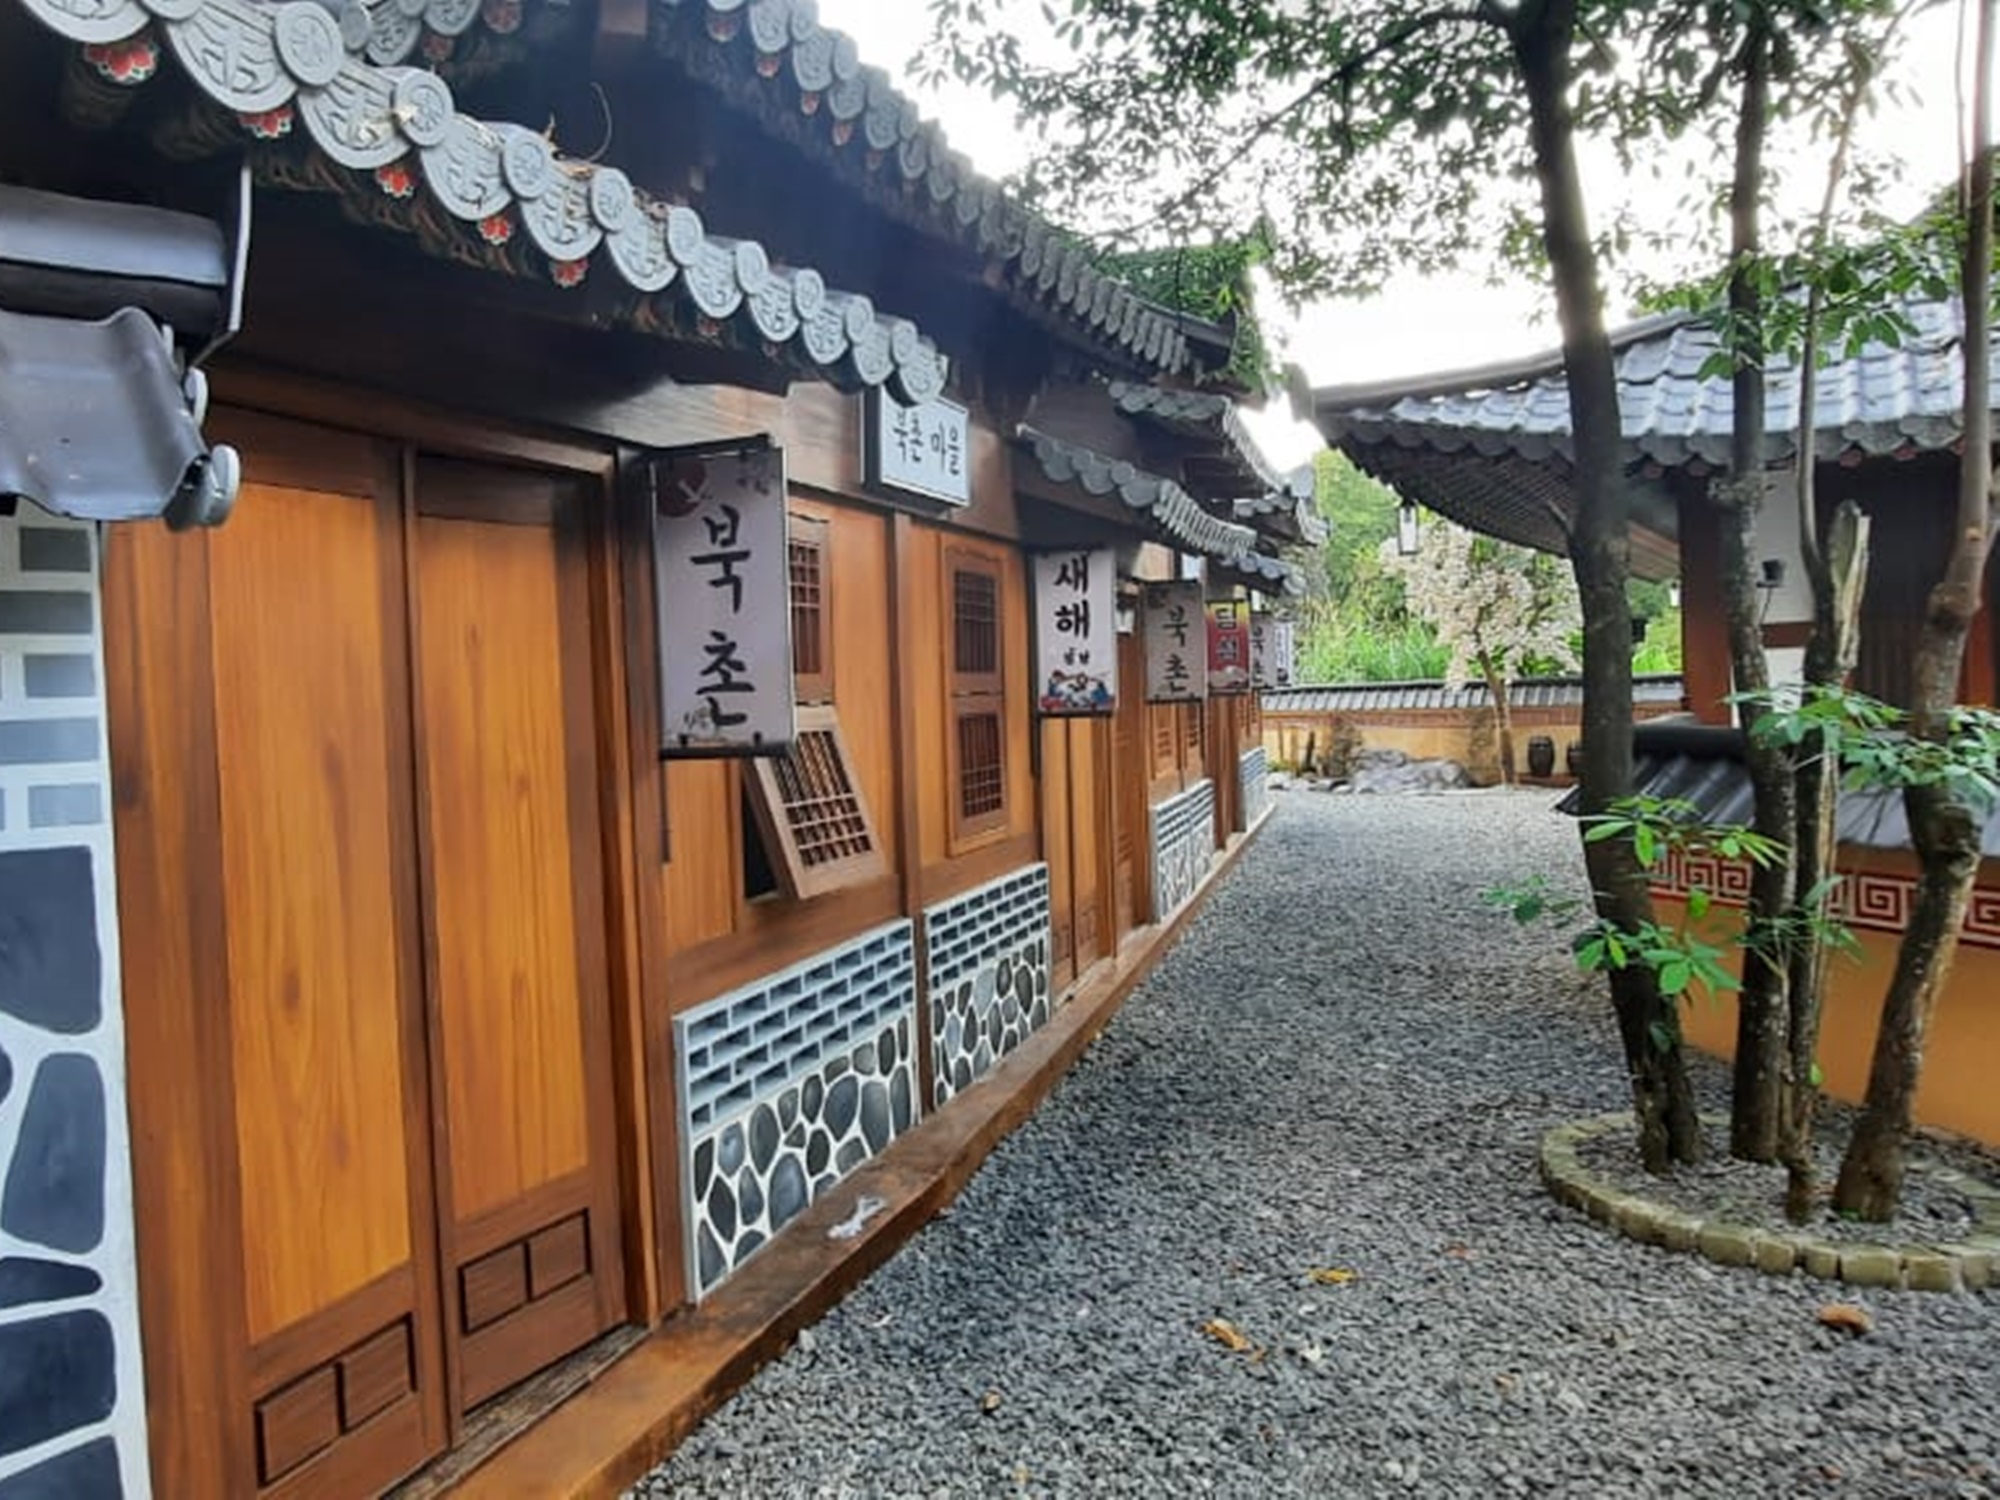 Bangunan dengan sentuhan gaya tradisional Korea Selatan